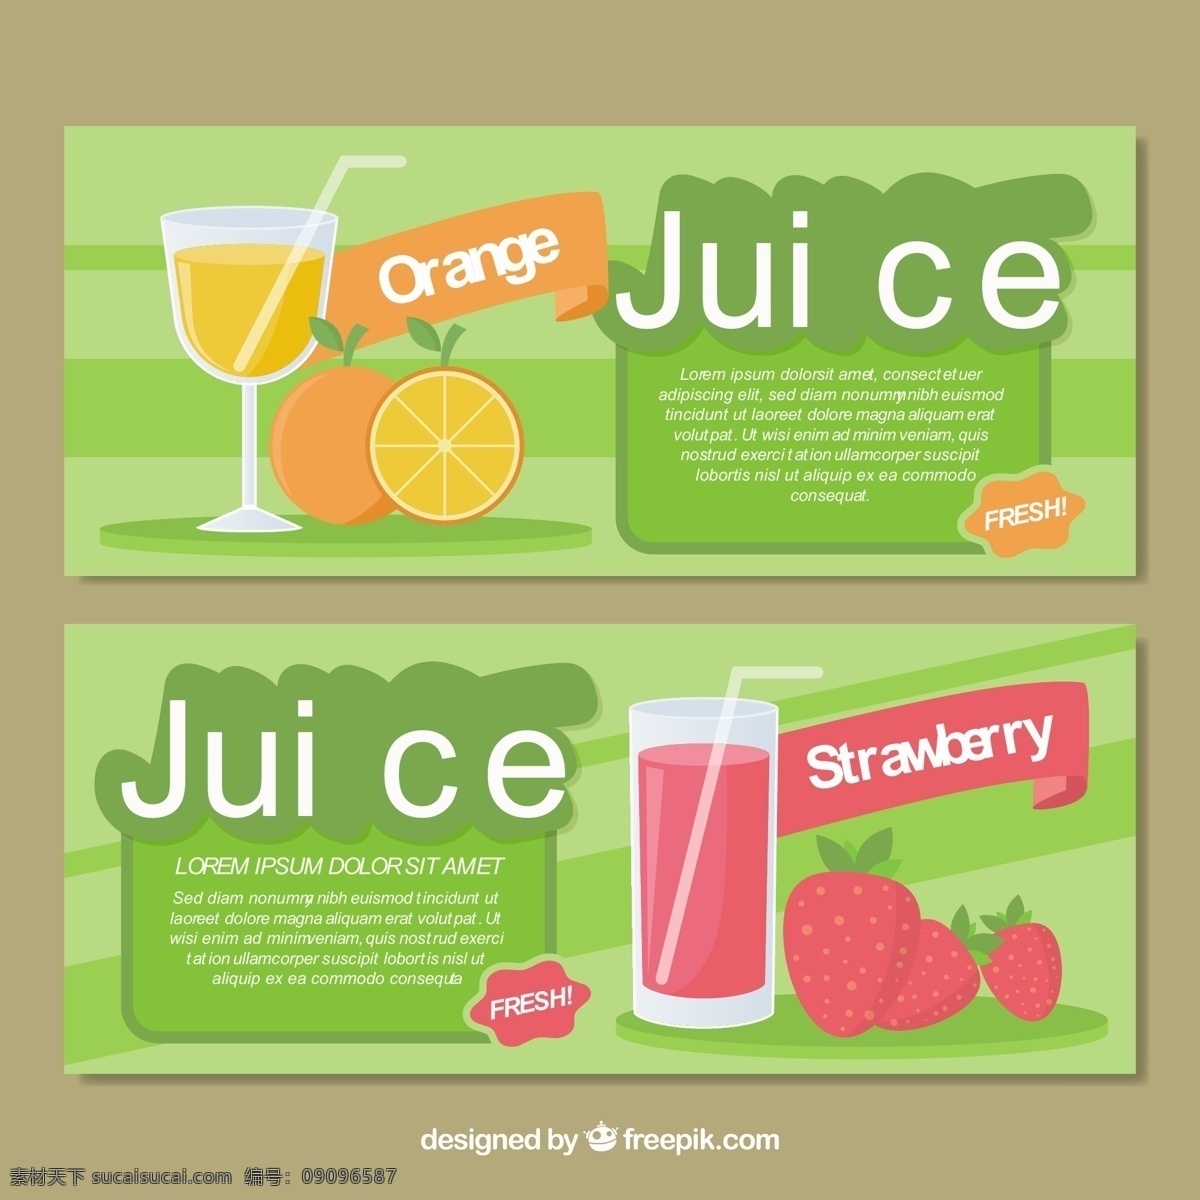 平面设计 中 果汁 横幅 旗帜 食品 夏季 水果 颜色 橙色 热带 平板 玻璃 饮料 自然 健康 草莓 吃 健康食品